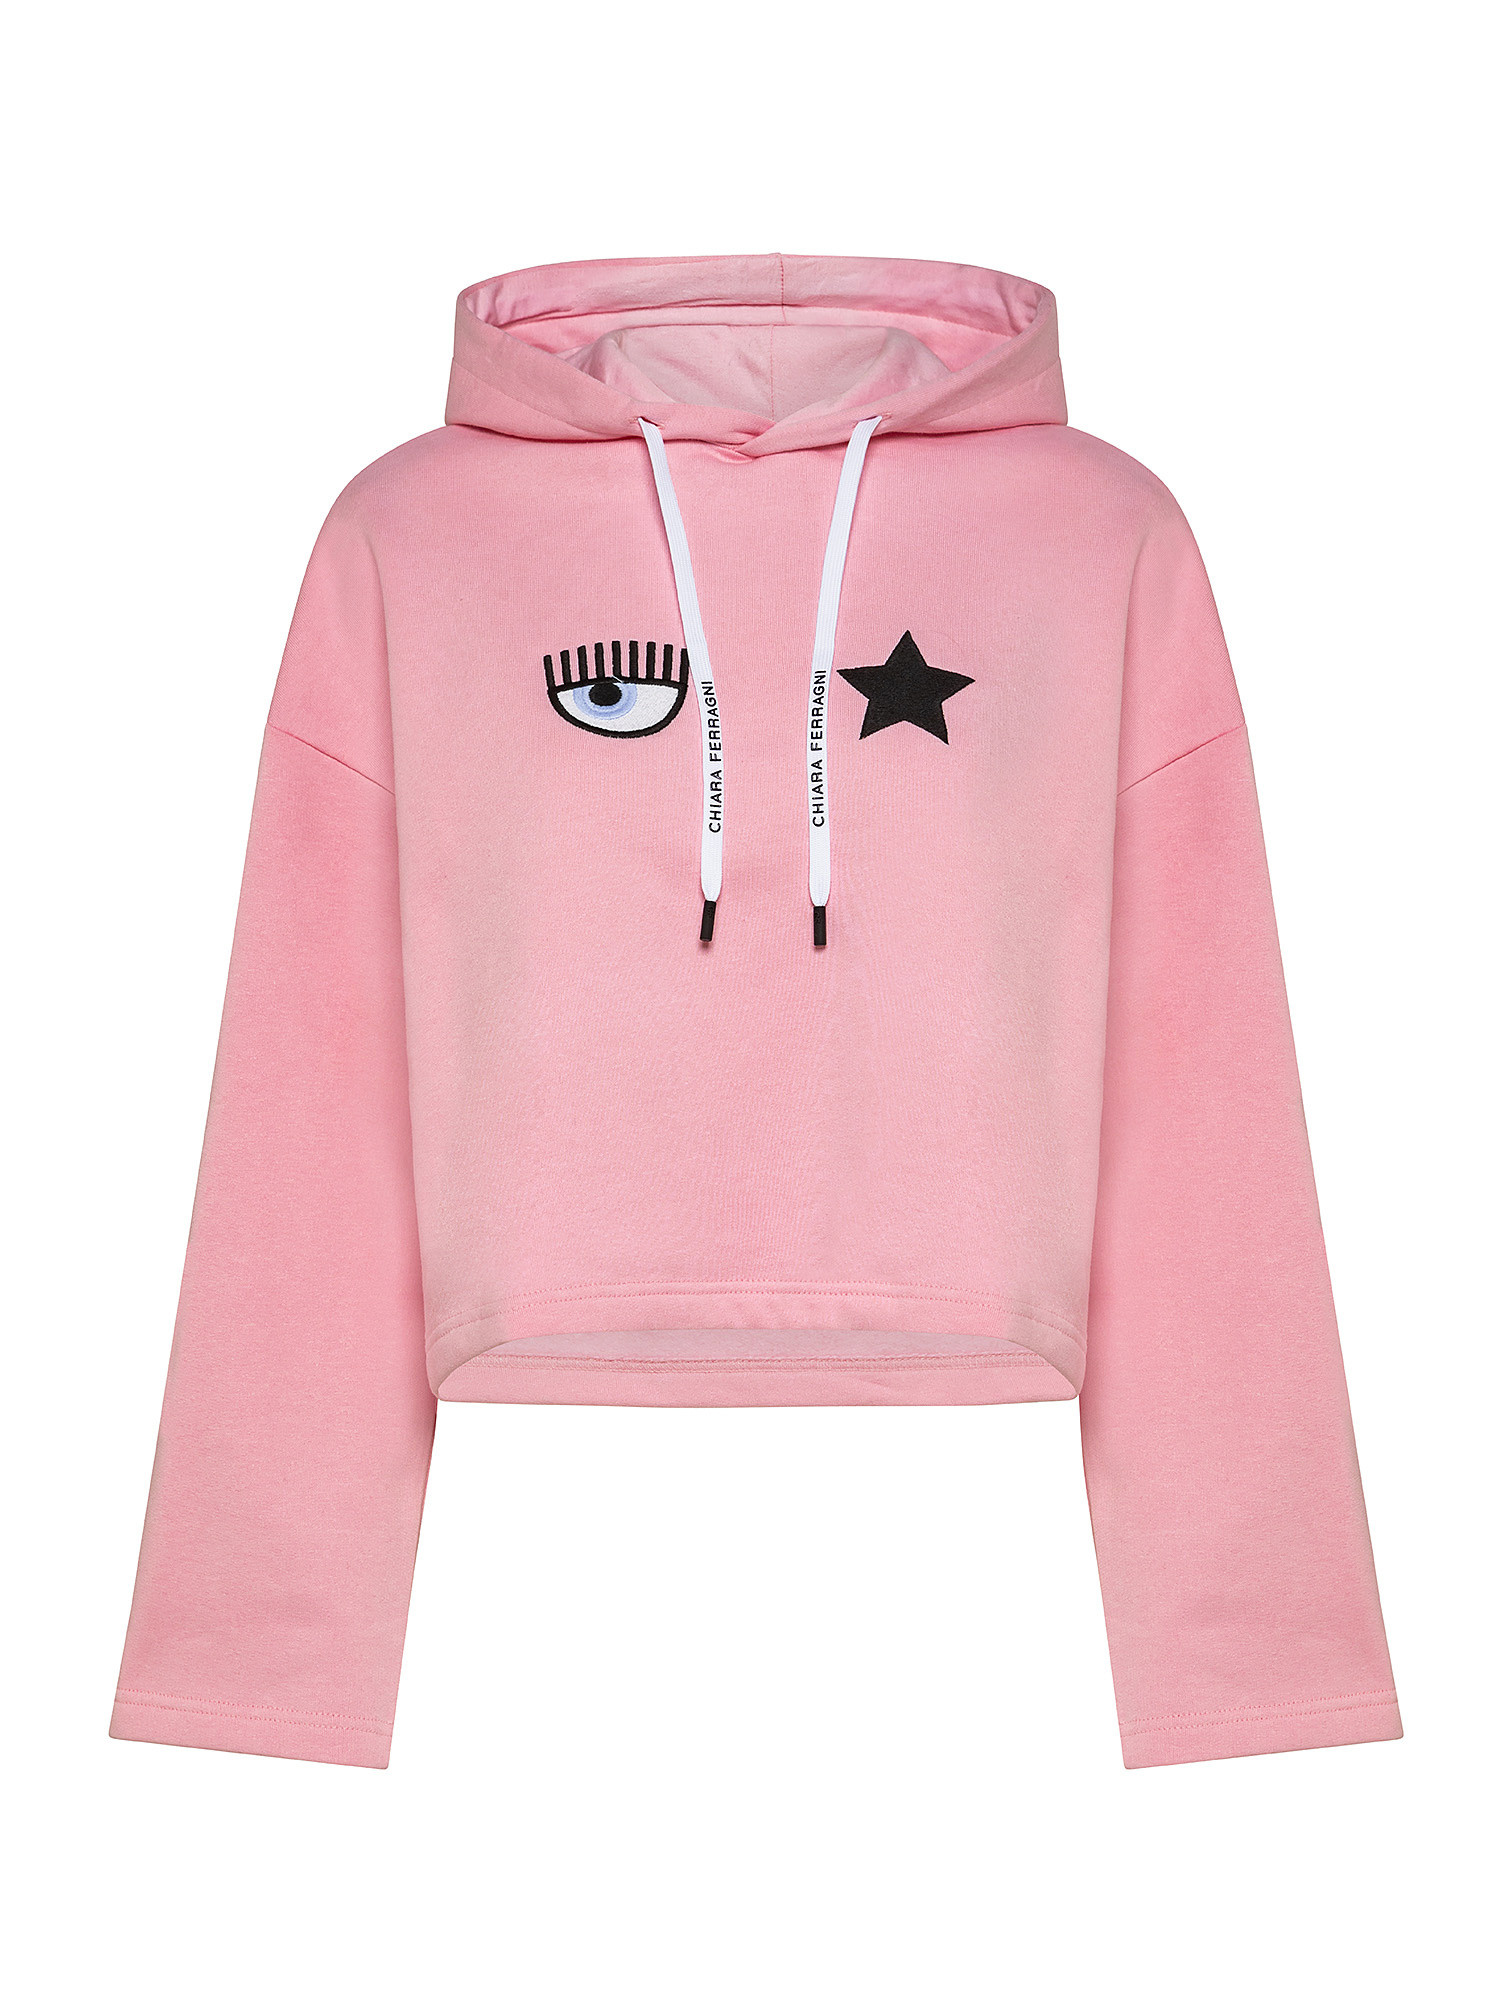 Eye Star sweatshirt, Pink, large image number 0